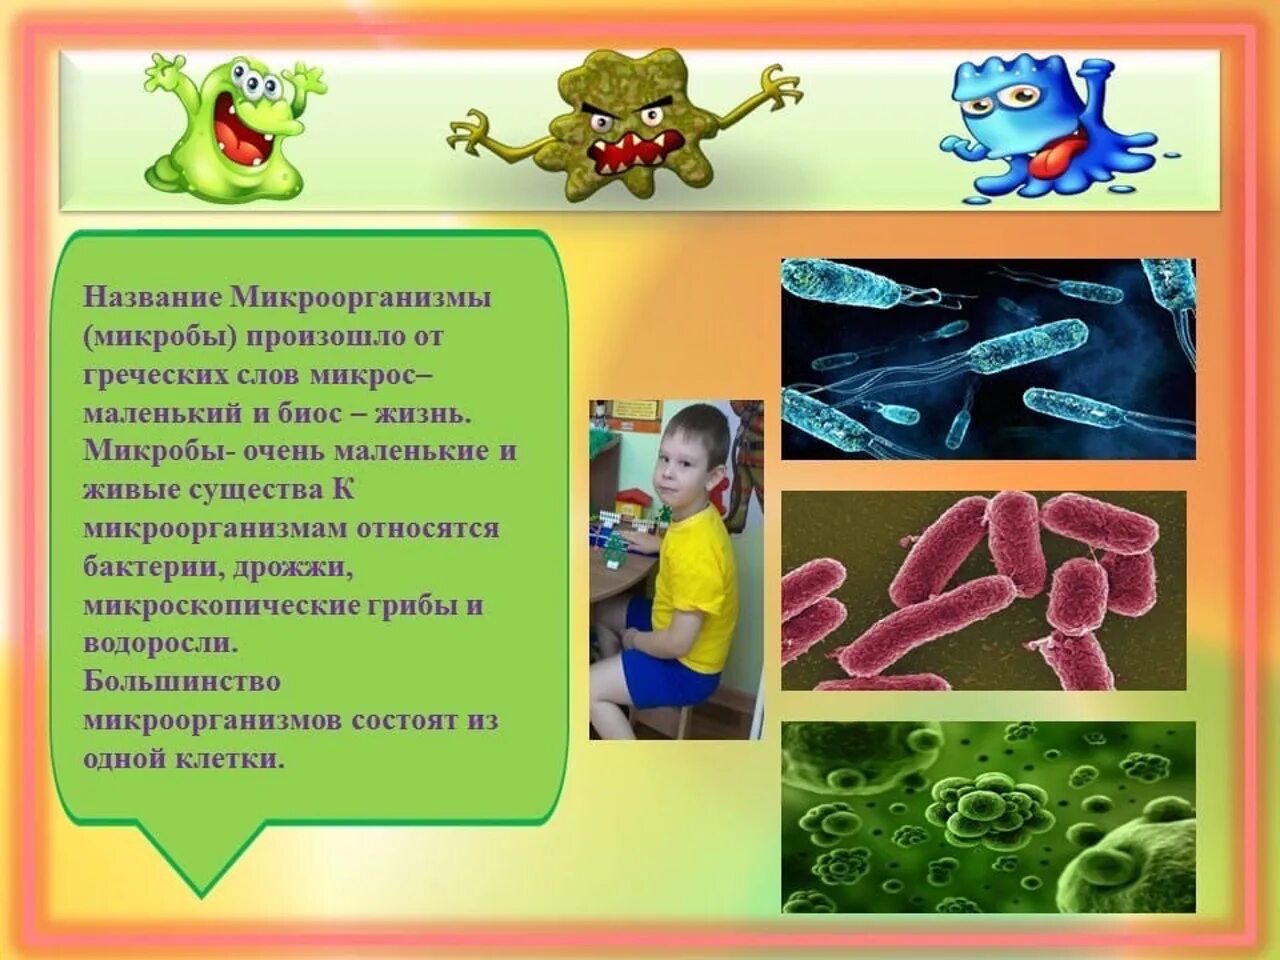 Тема бактерии и вирусы 5 класс. Микробы для дошкольников. Микробы информация для детей дошкольного возраста. Презентация микробы для дошкольников. Детям про микробы и бактерии для детей.